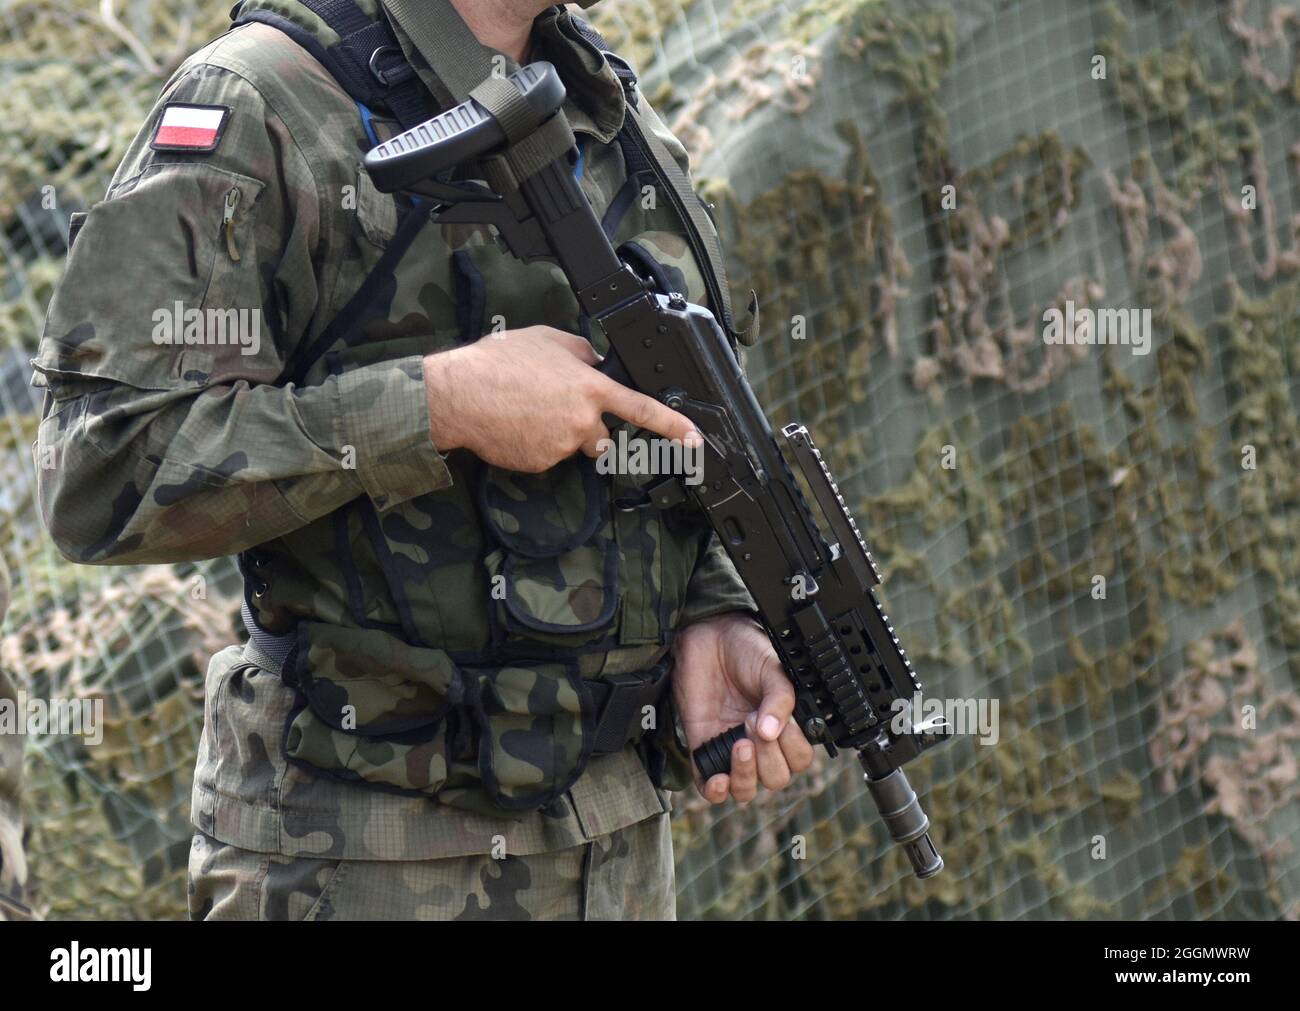 Soldat Polens mit Sturmgewehr und Flagge Polens auf Militäruniform. Polnischer Soldat mit Sturmgewehr. Stockfoto